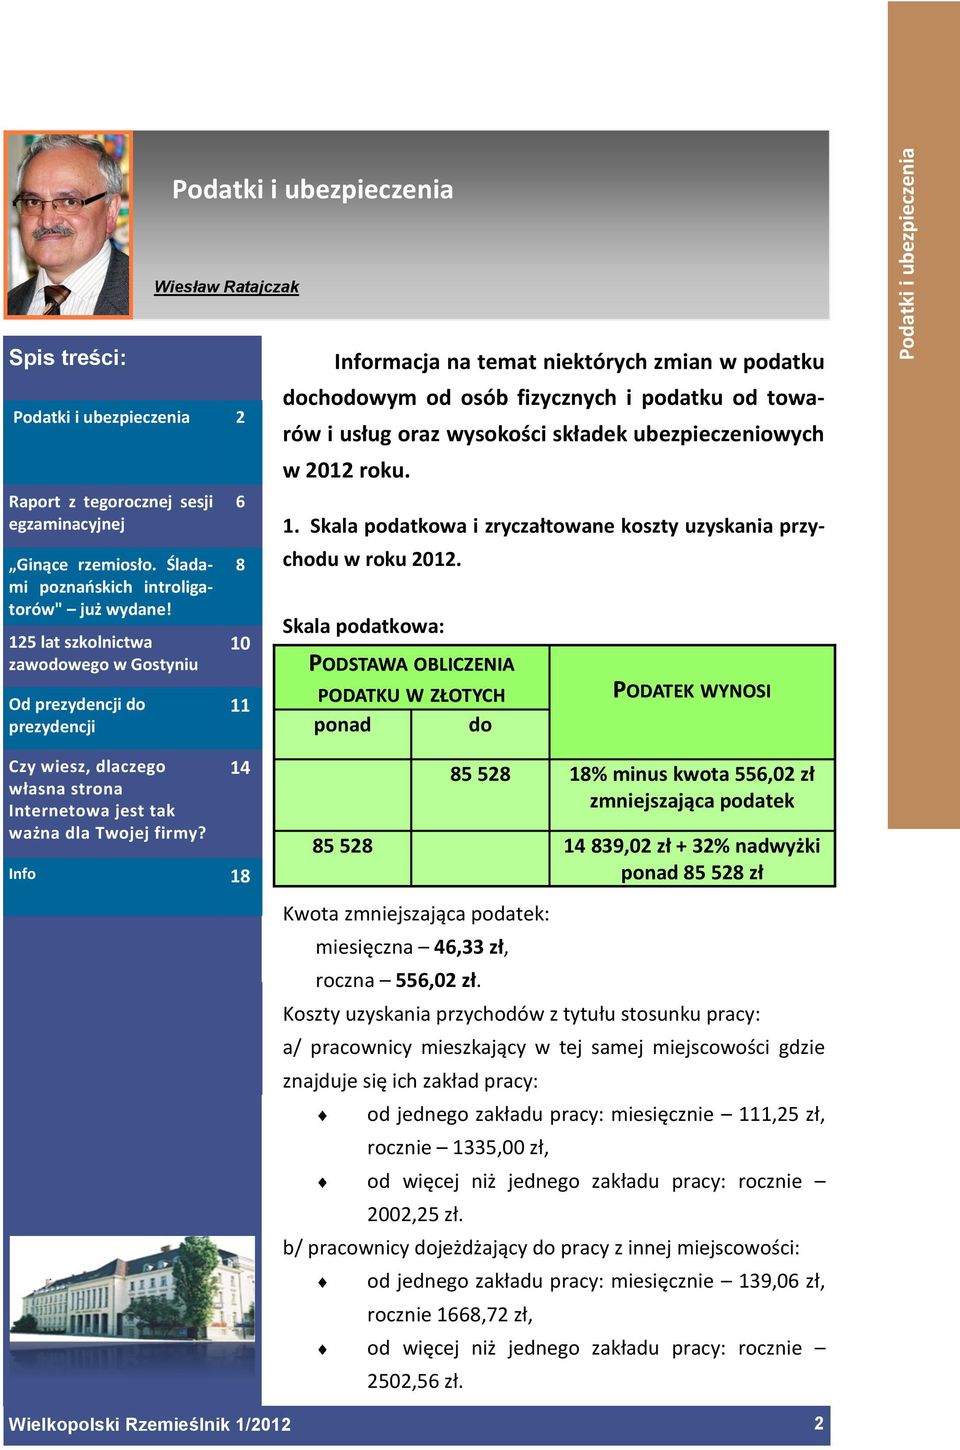 6 8 10 11 14 Info 18 Informacja na temat niektórych zmian w podatku dochodowym od osób fizycznych i podatku od towarów i usług oraz wysokości składek ubezpieczeniowych w 2012 roku. 1. Skala podatkowa i zryczałtowane koszty uzyskania przychodu w roku 2012.